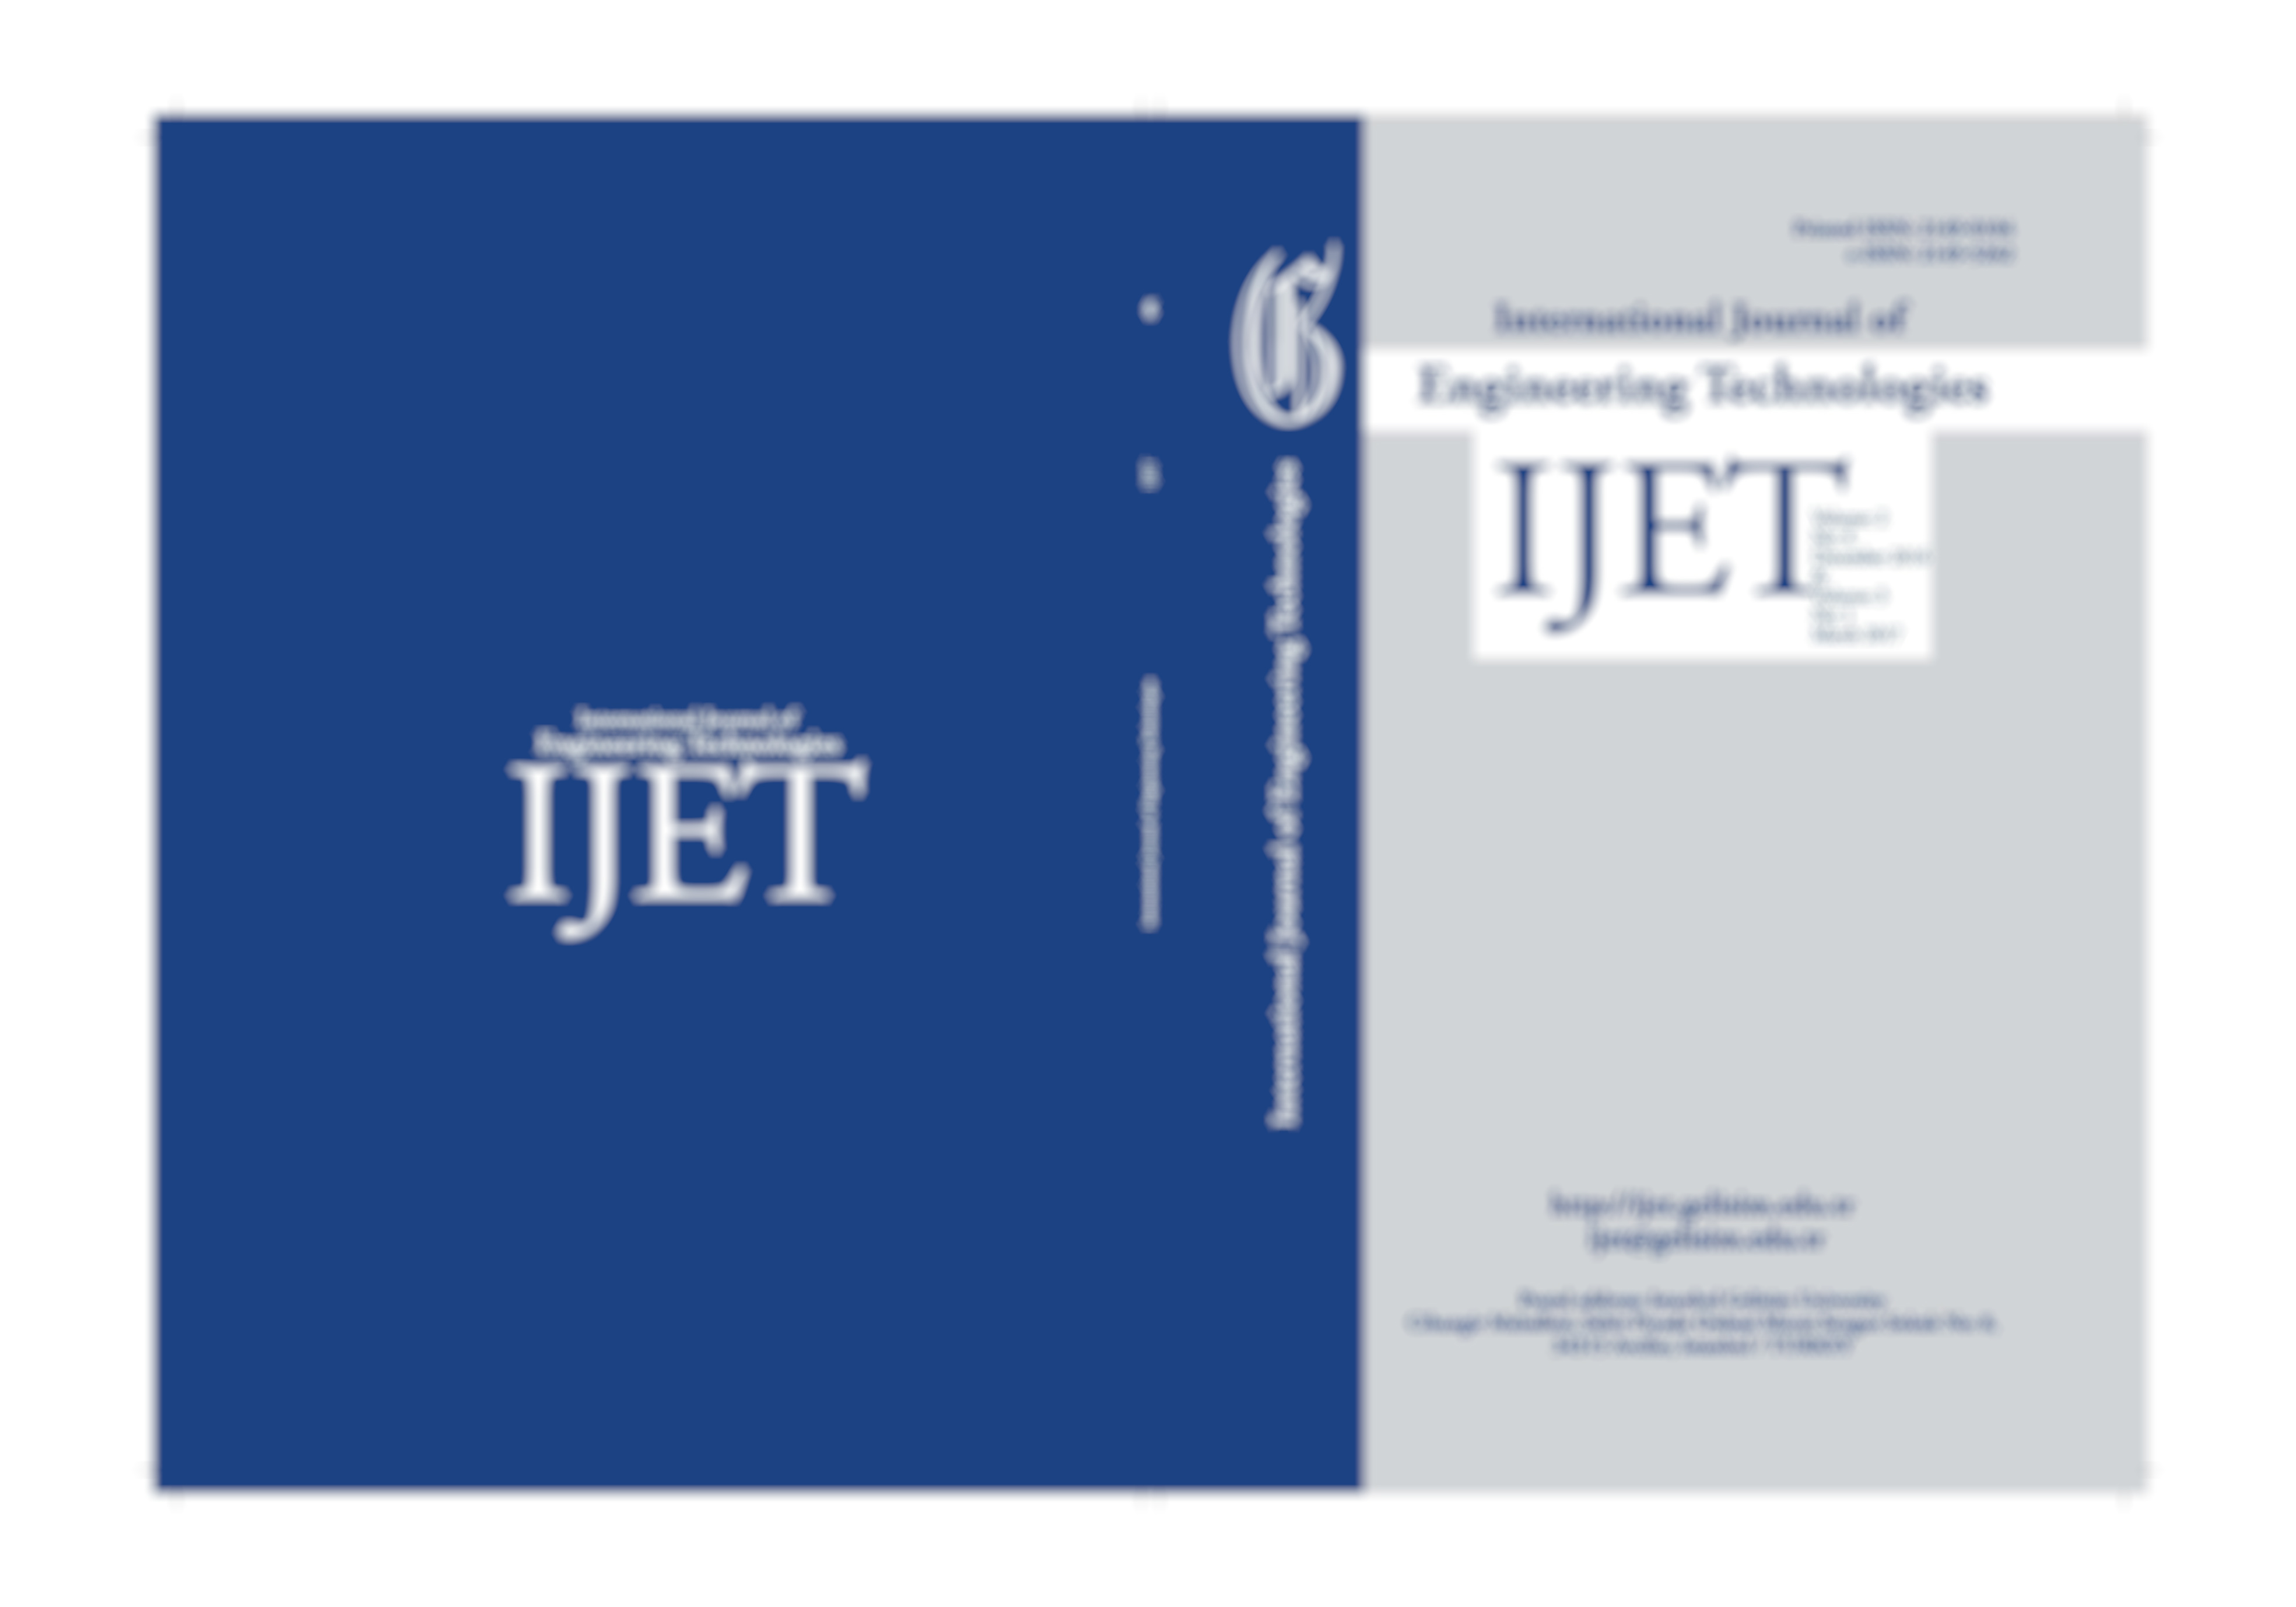 International Journal of Engineering Technologies (IJET) 8. ve 9. Sayısı Yayınlandı!